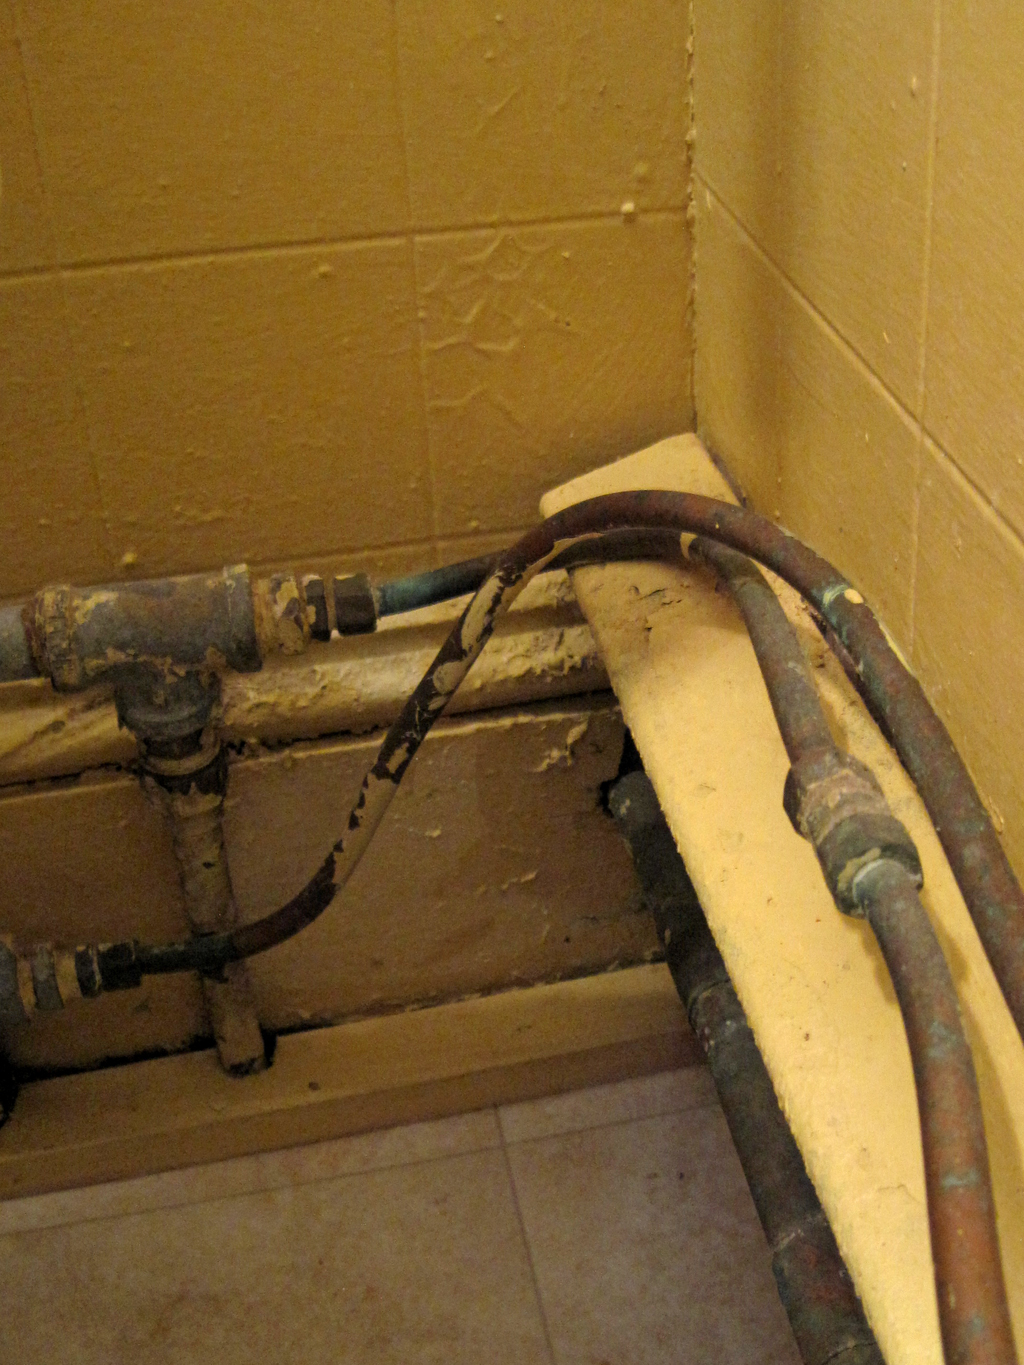 busted plumbing